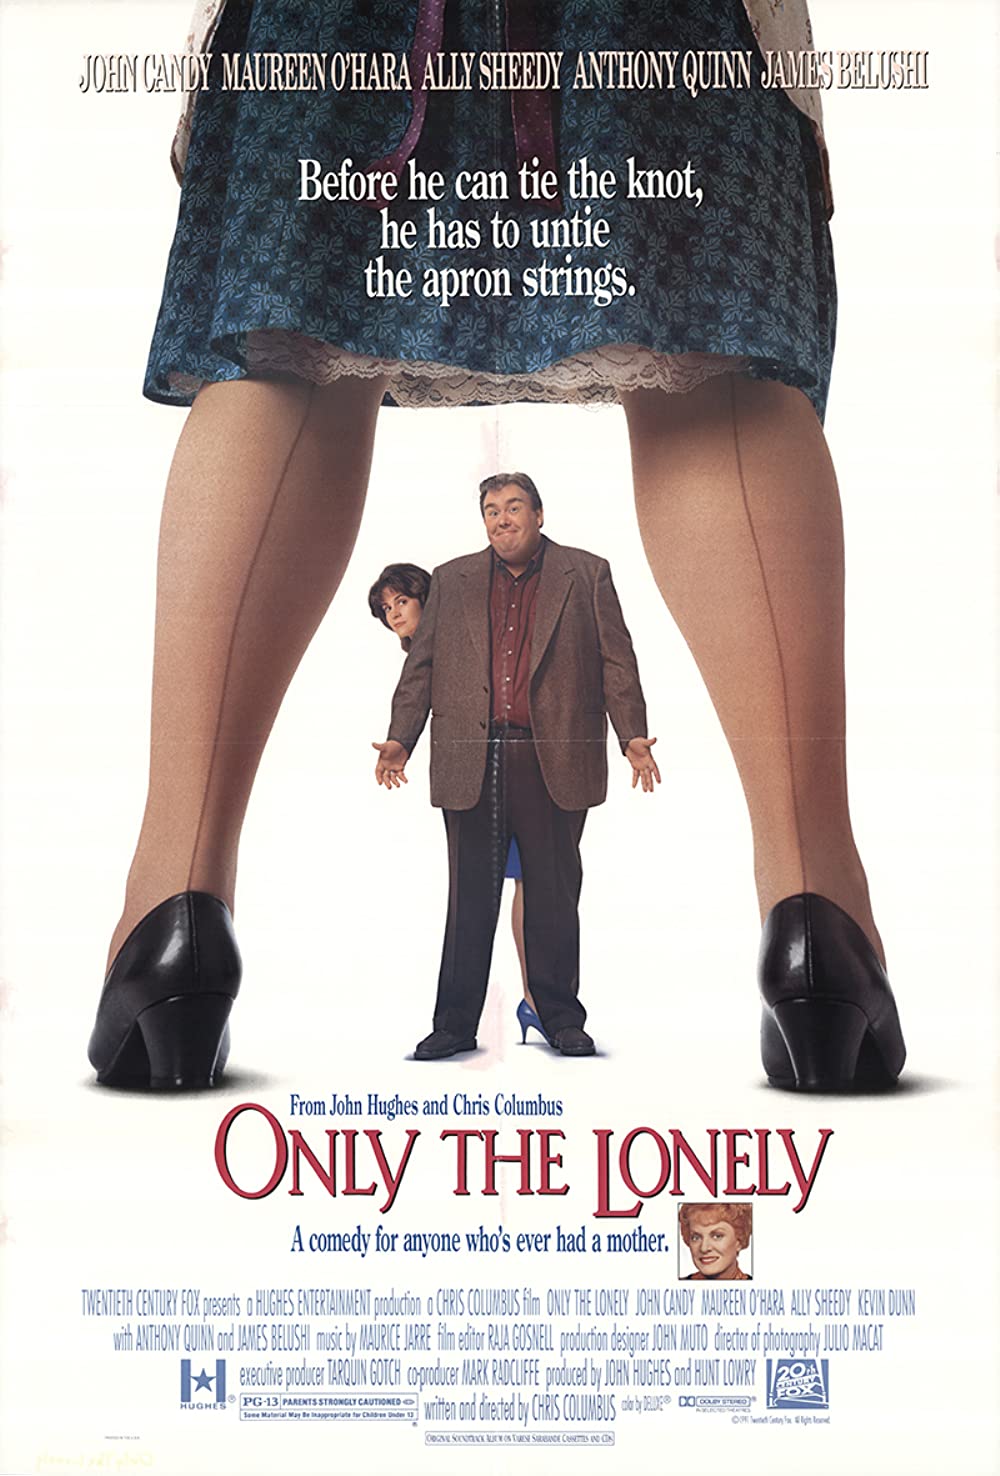 Filmbeschreibung zu Only the Lonely